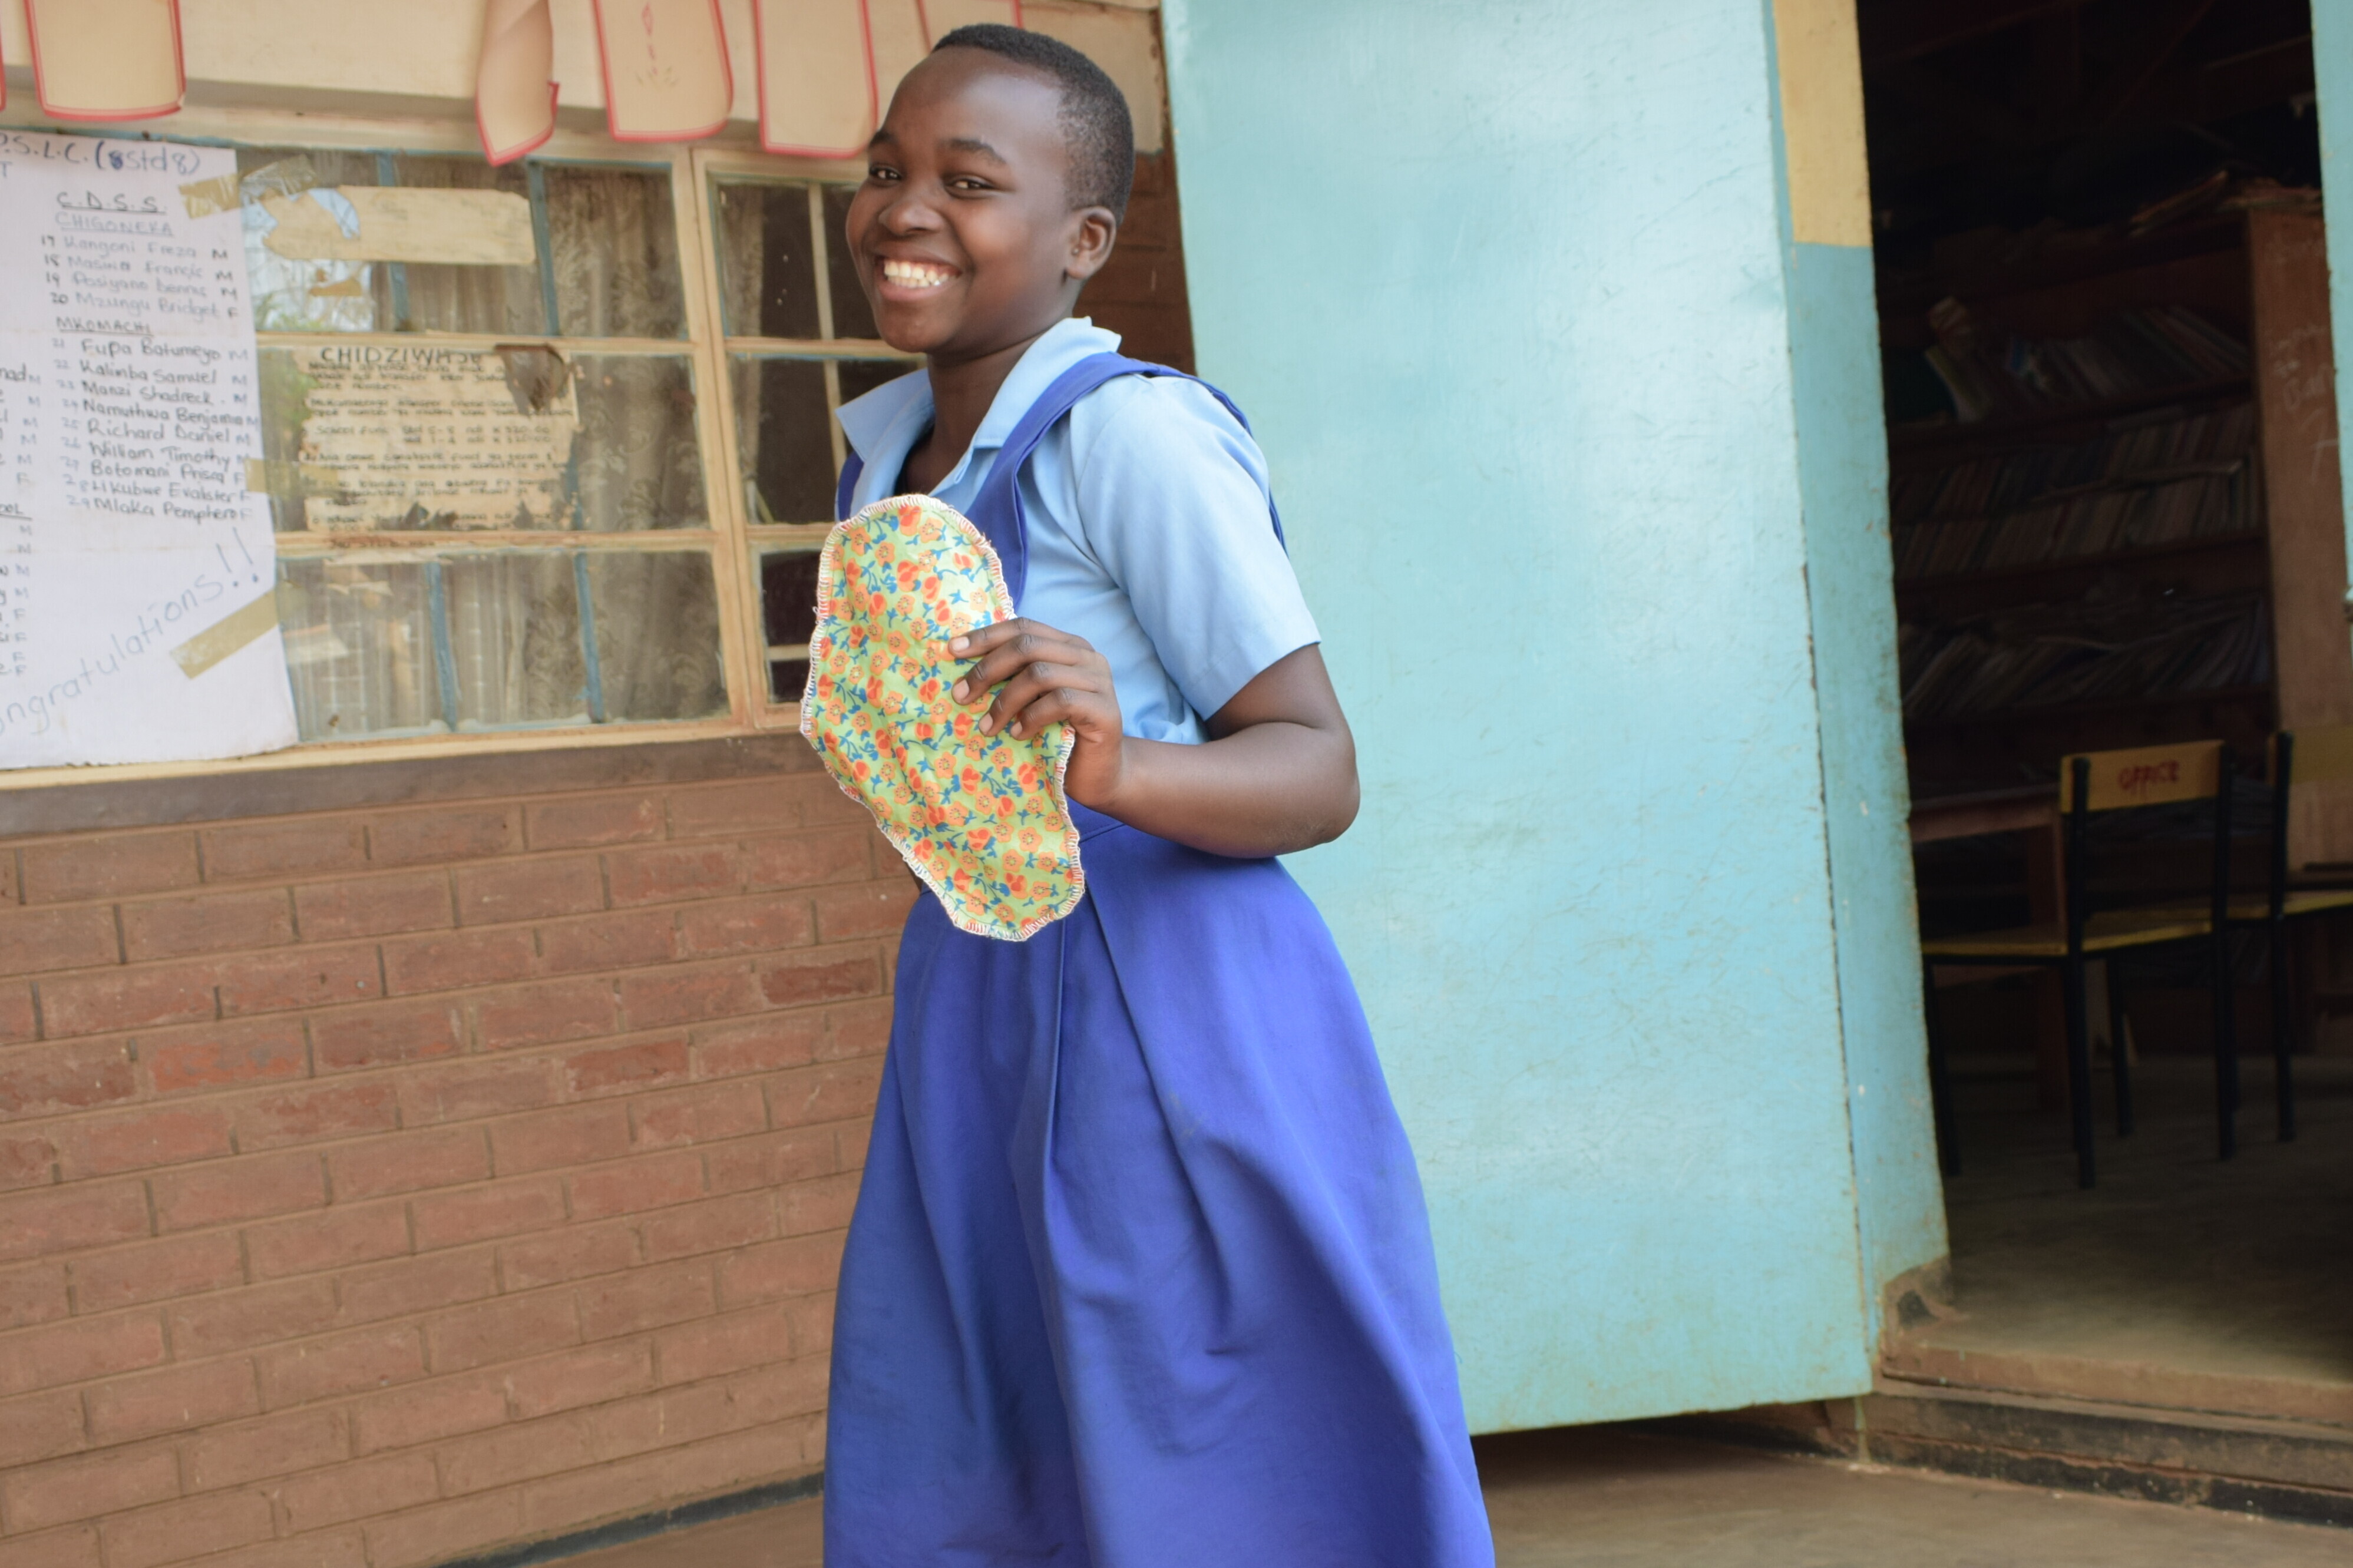 Heute ist Chisomo sichtlich erleichtert und besucht gerne wieder ihre Schule Mtsiriza nahe Malawis Hauptstadt Lilongwe